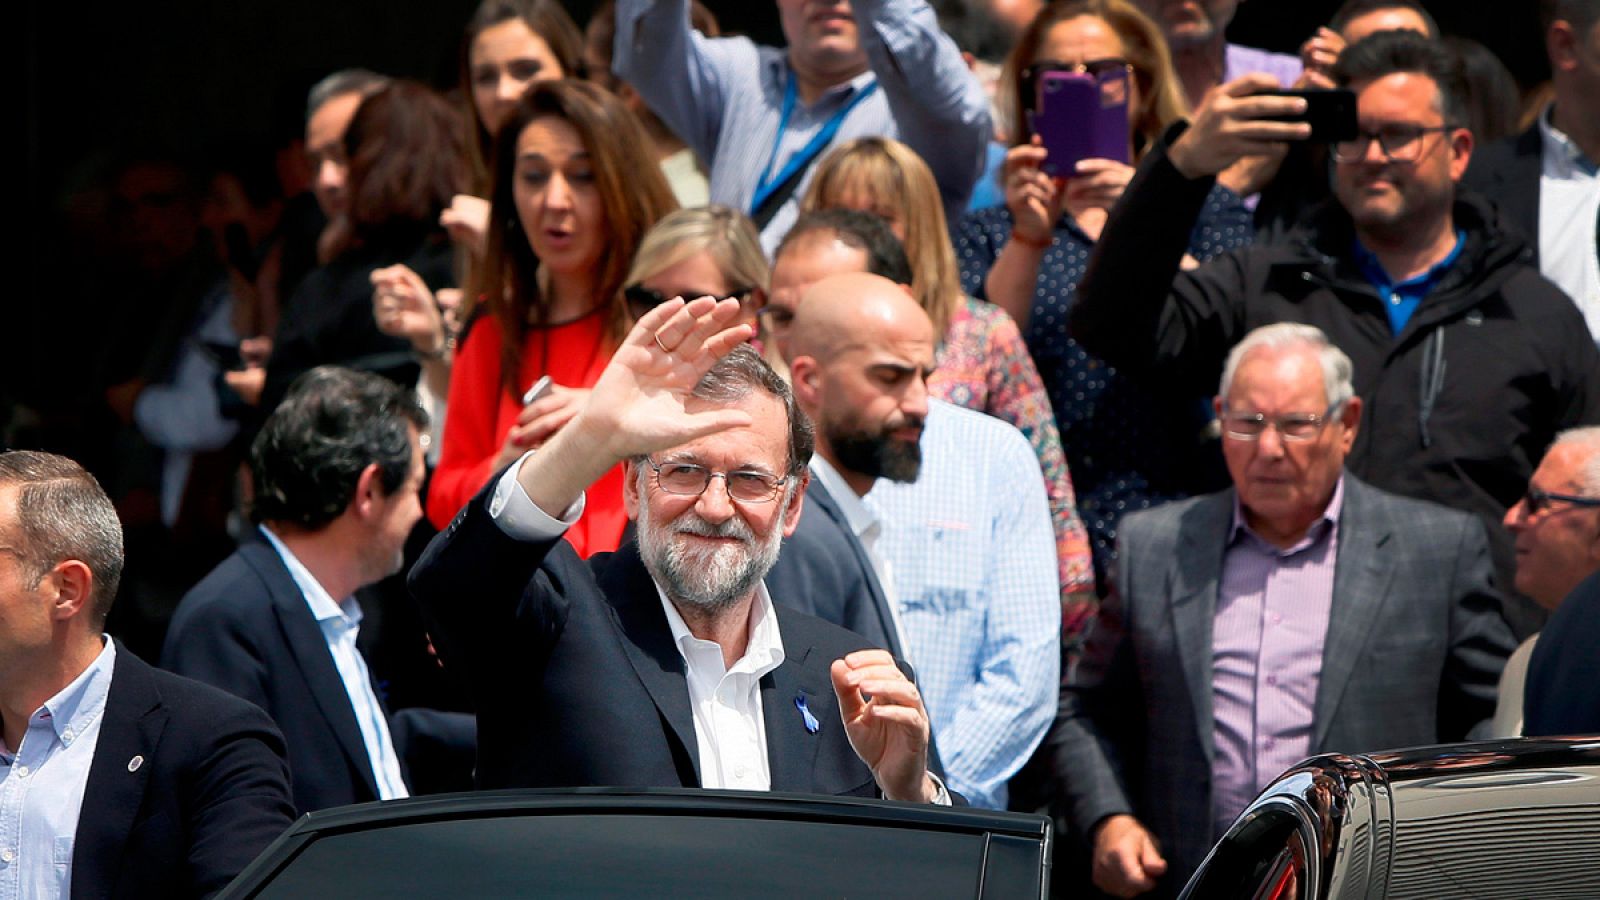 El presidente del gobierno, Mariano Rajoy, saliendo del acto del PP en Alicante